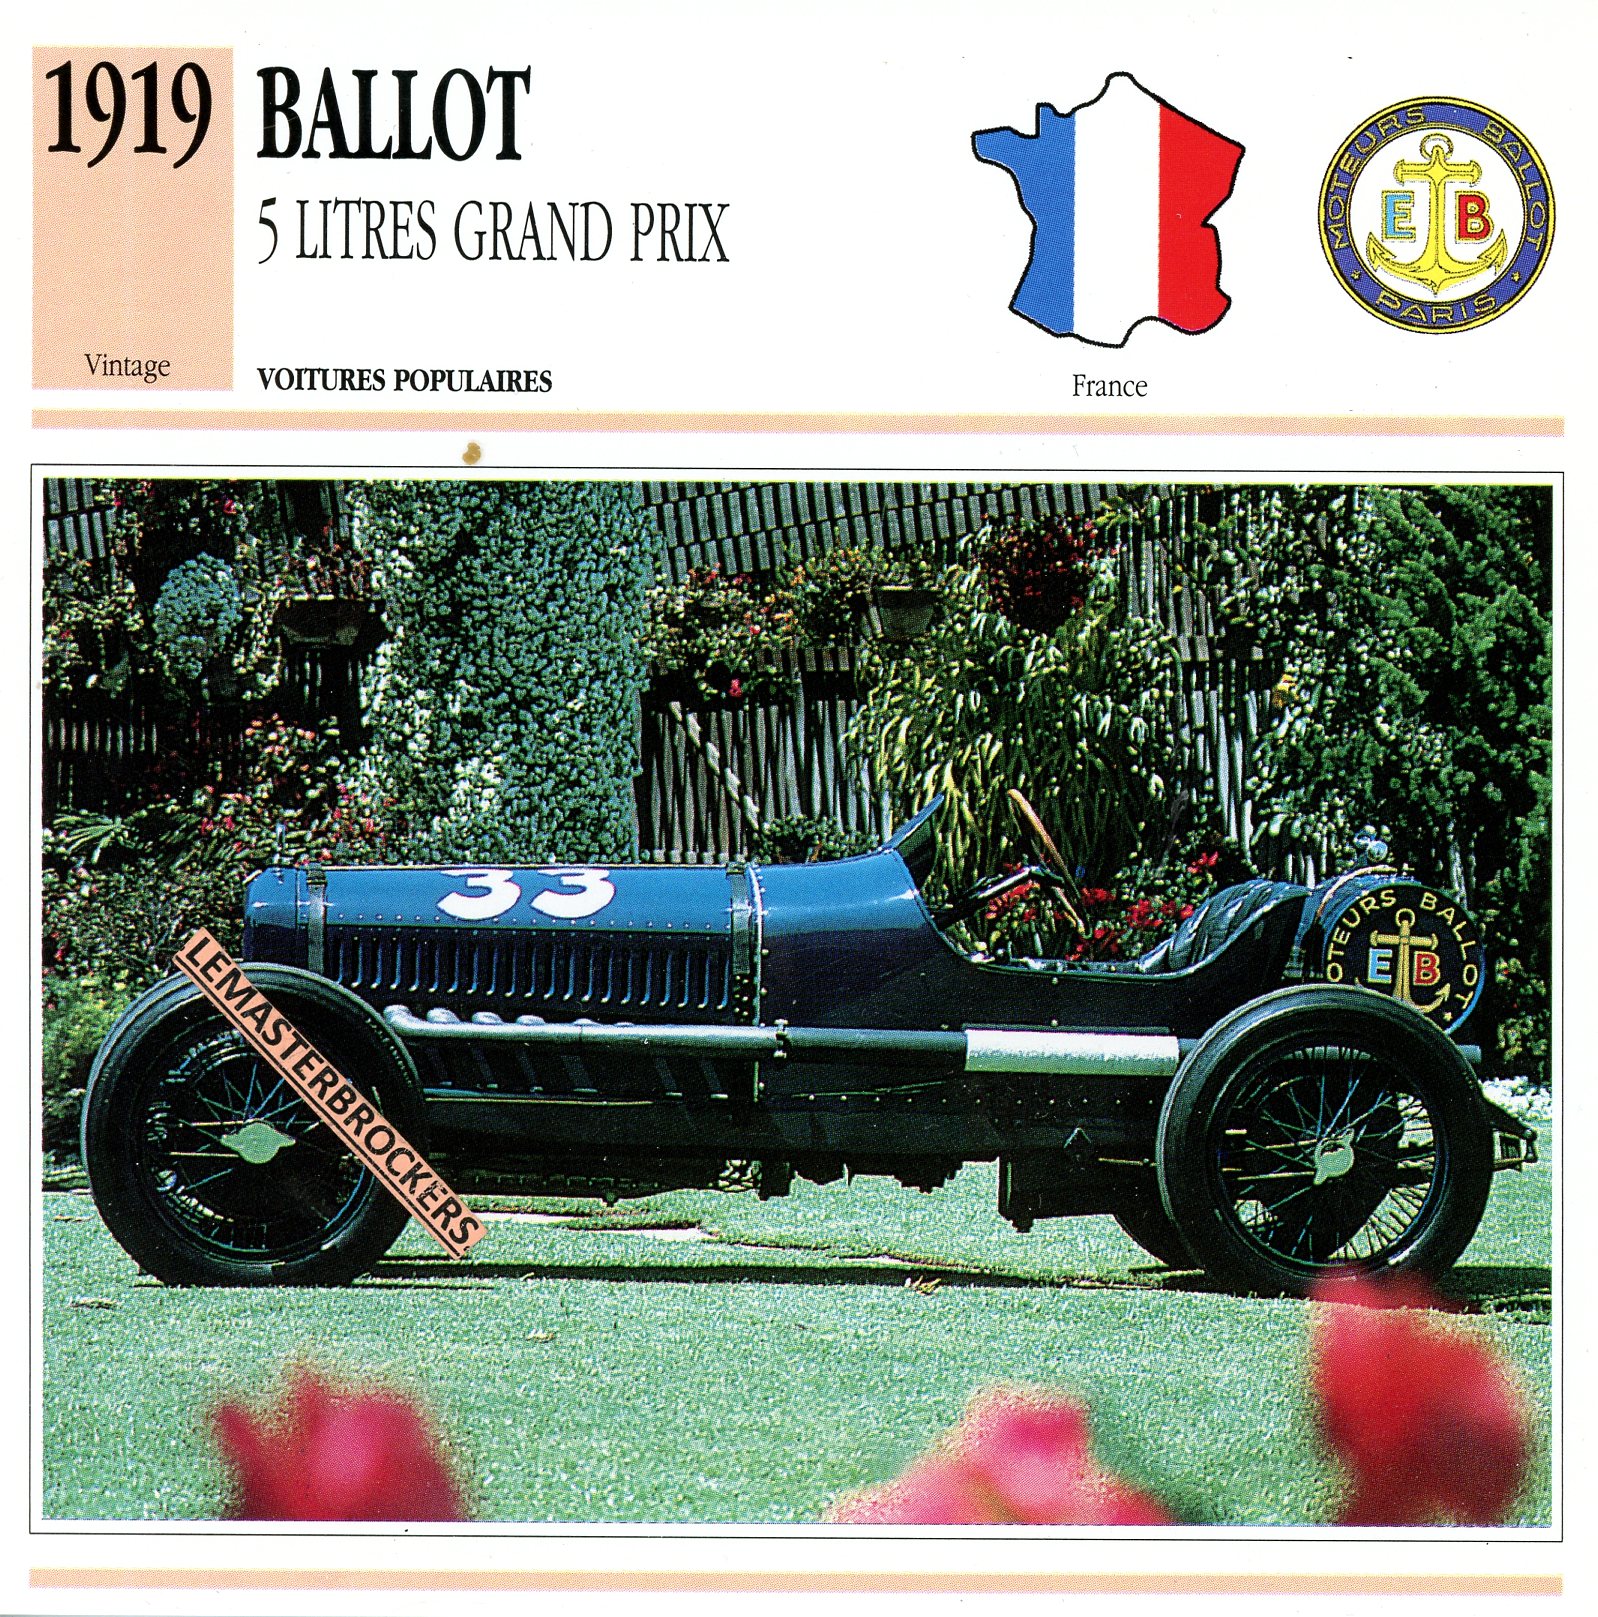 1919 BALLOT 5 LITRES GRAND PRIX - FICHE AUTO - CARS CARD ATLAS ÉDITION